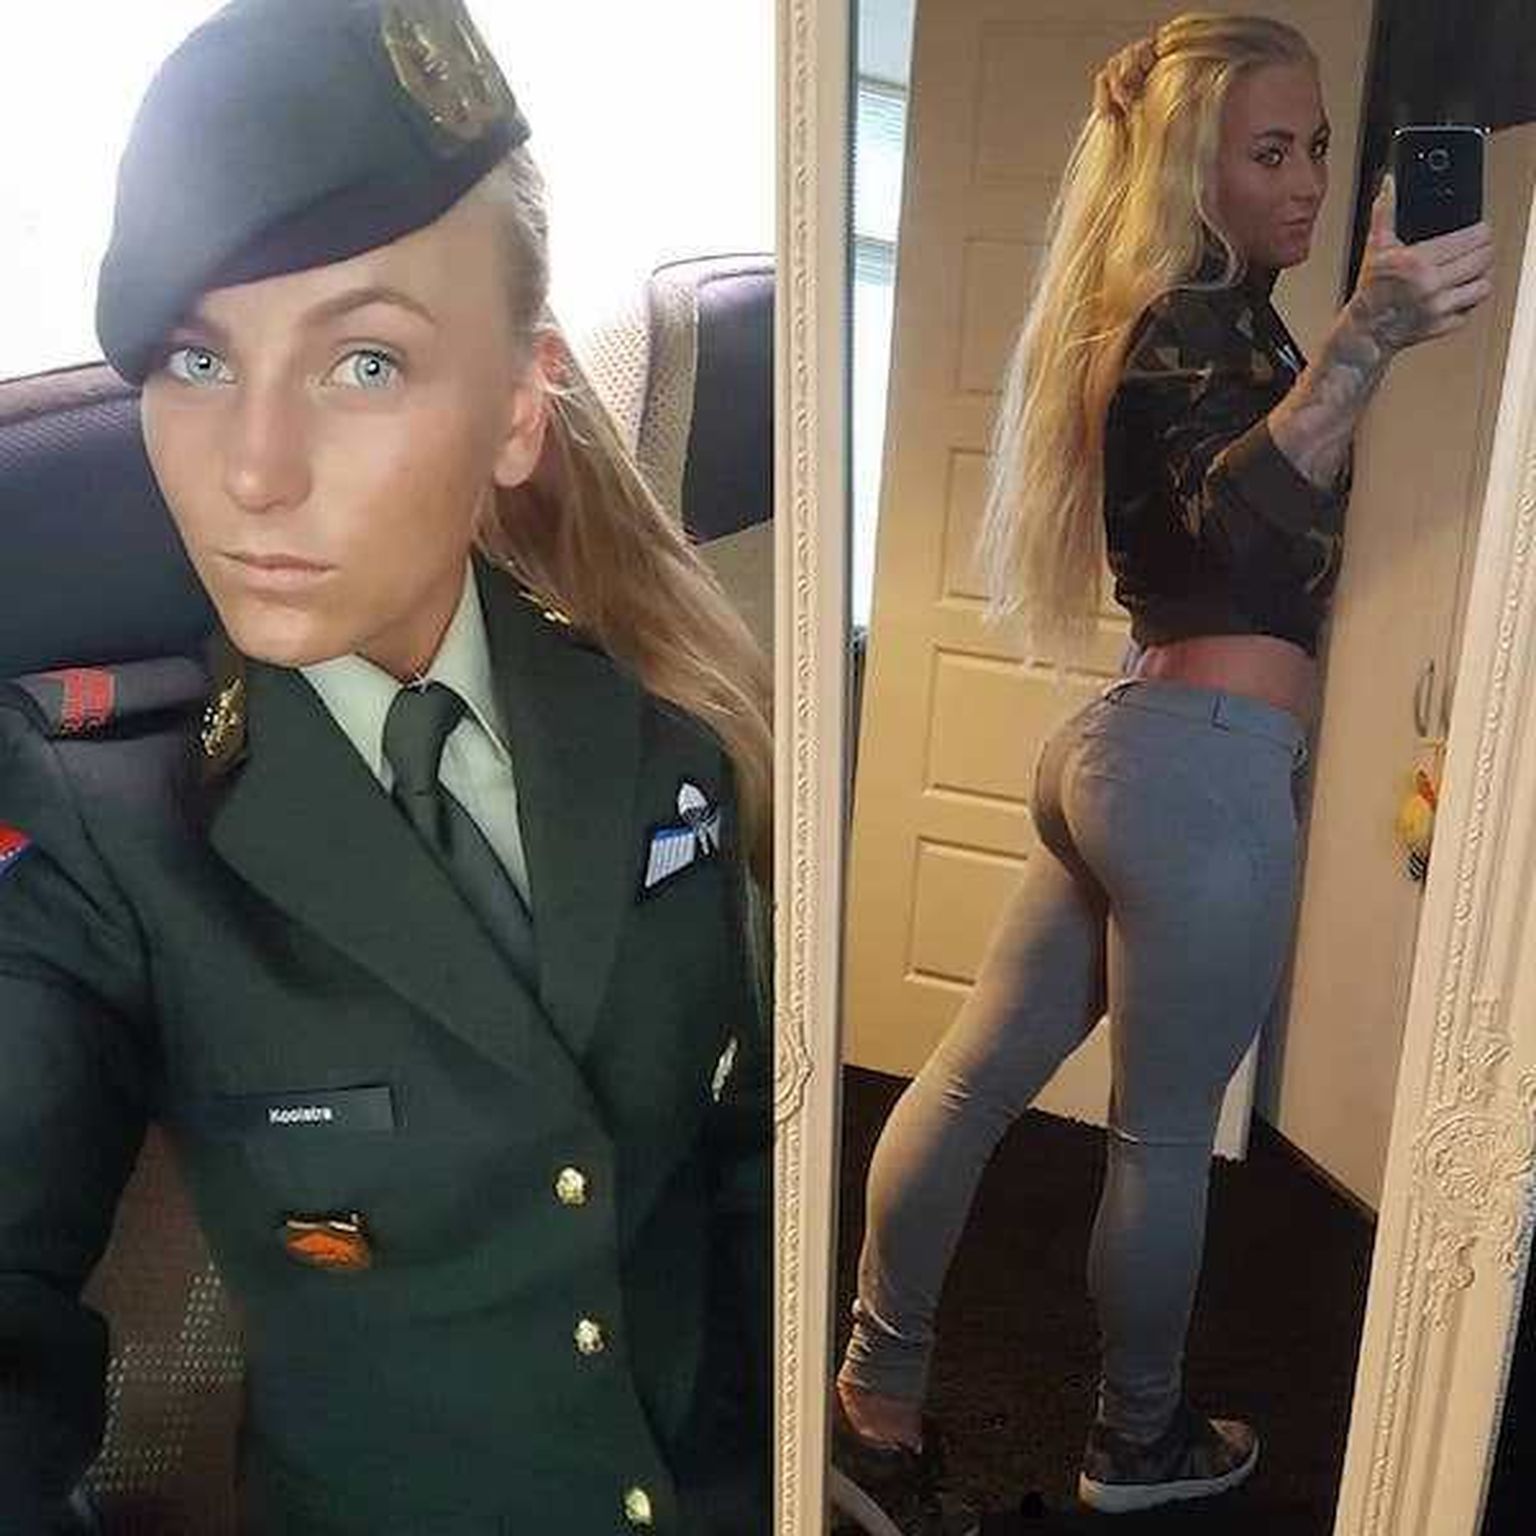 Служанка в униформе подъебнулась с мужчиной во время работы